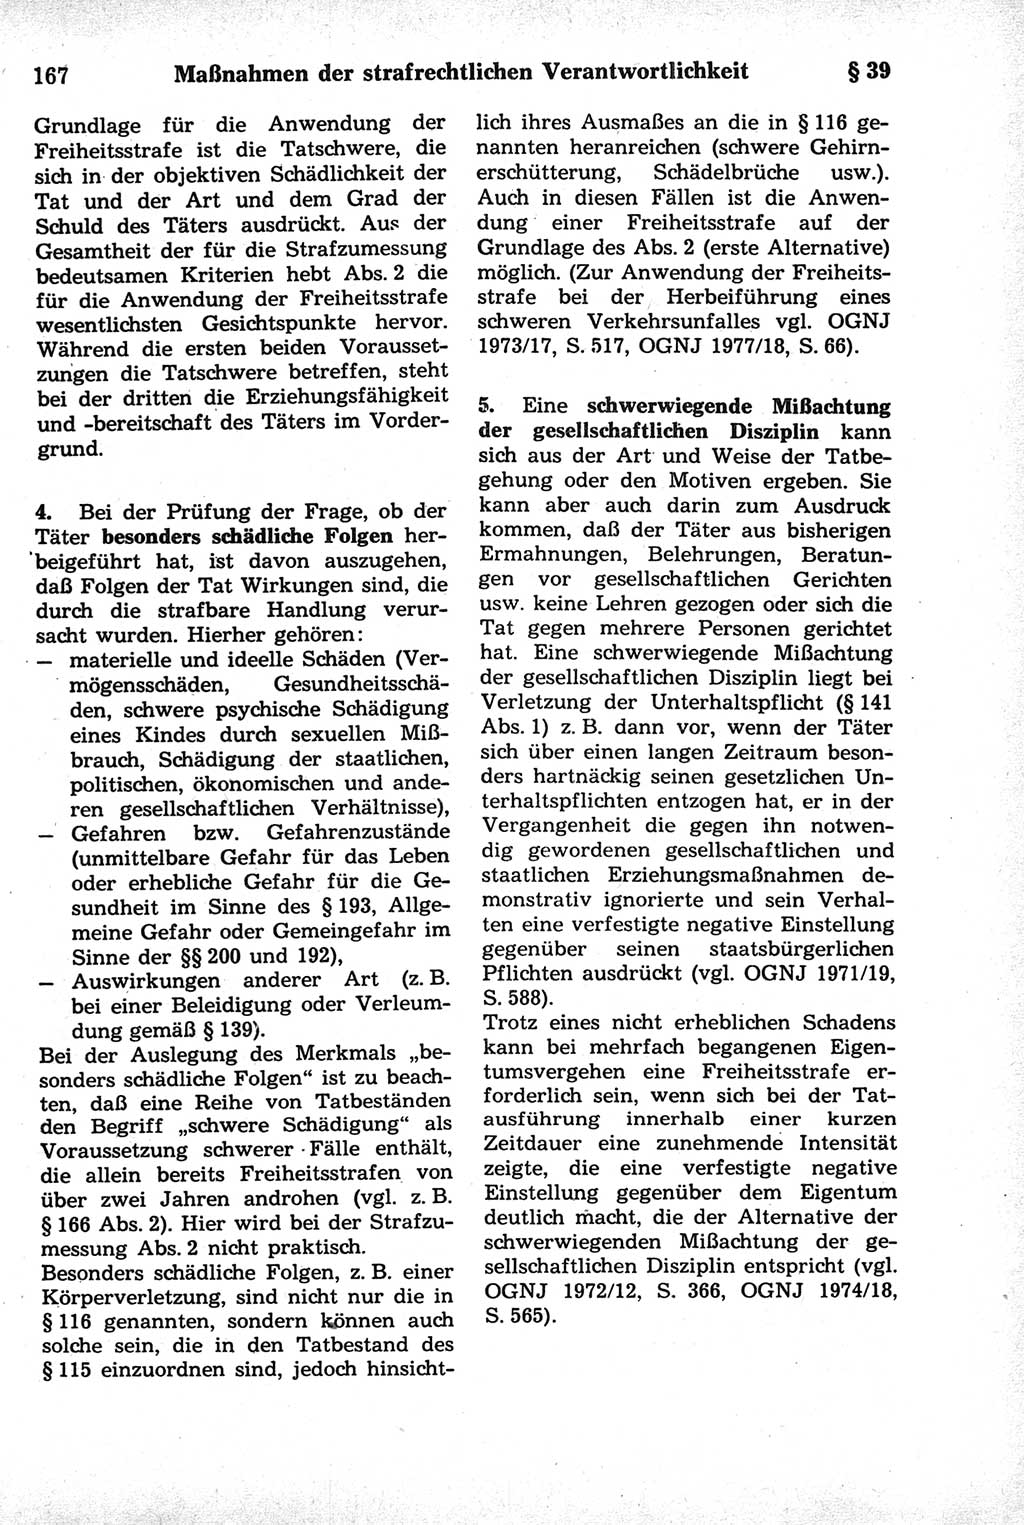 Strafrecht der Deutschen Demokratischen Republik (DDR), Kommentar zum Strafgesetzbuch (StGB) 1981, Seite 167 (Strafr. DDR Komm. StGB 1981, S. 167)